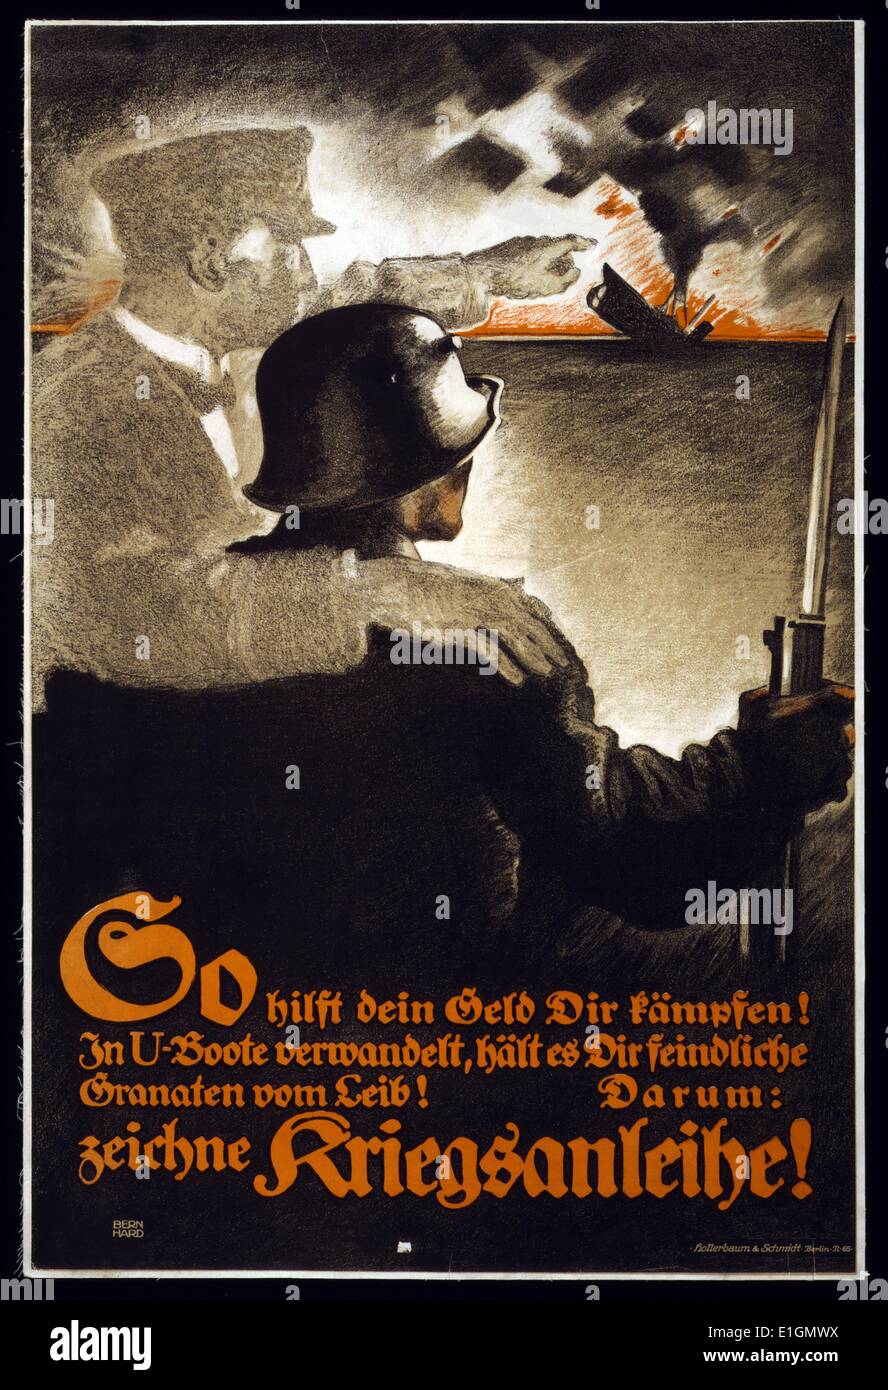 Poster montre le fantôme d'un marin avec son bras autour d'un soldat. Il pointe vers un naufrage du sous-marin. Texte encourage les gens à s'abonner à l'emprunt de guerre. Datée 1917 Banque D'Images